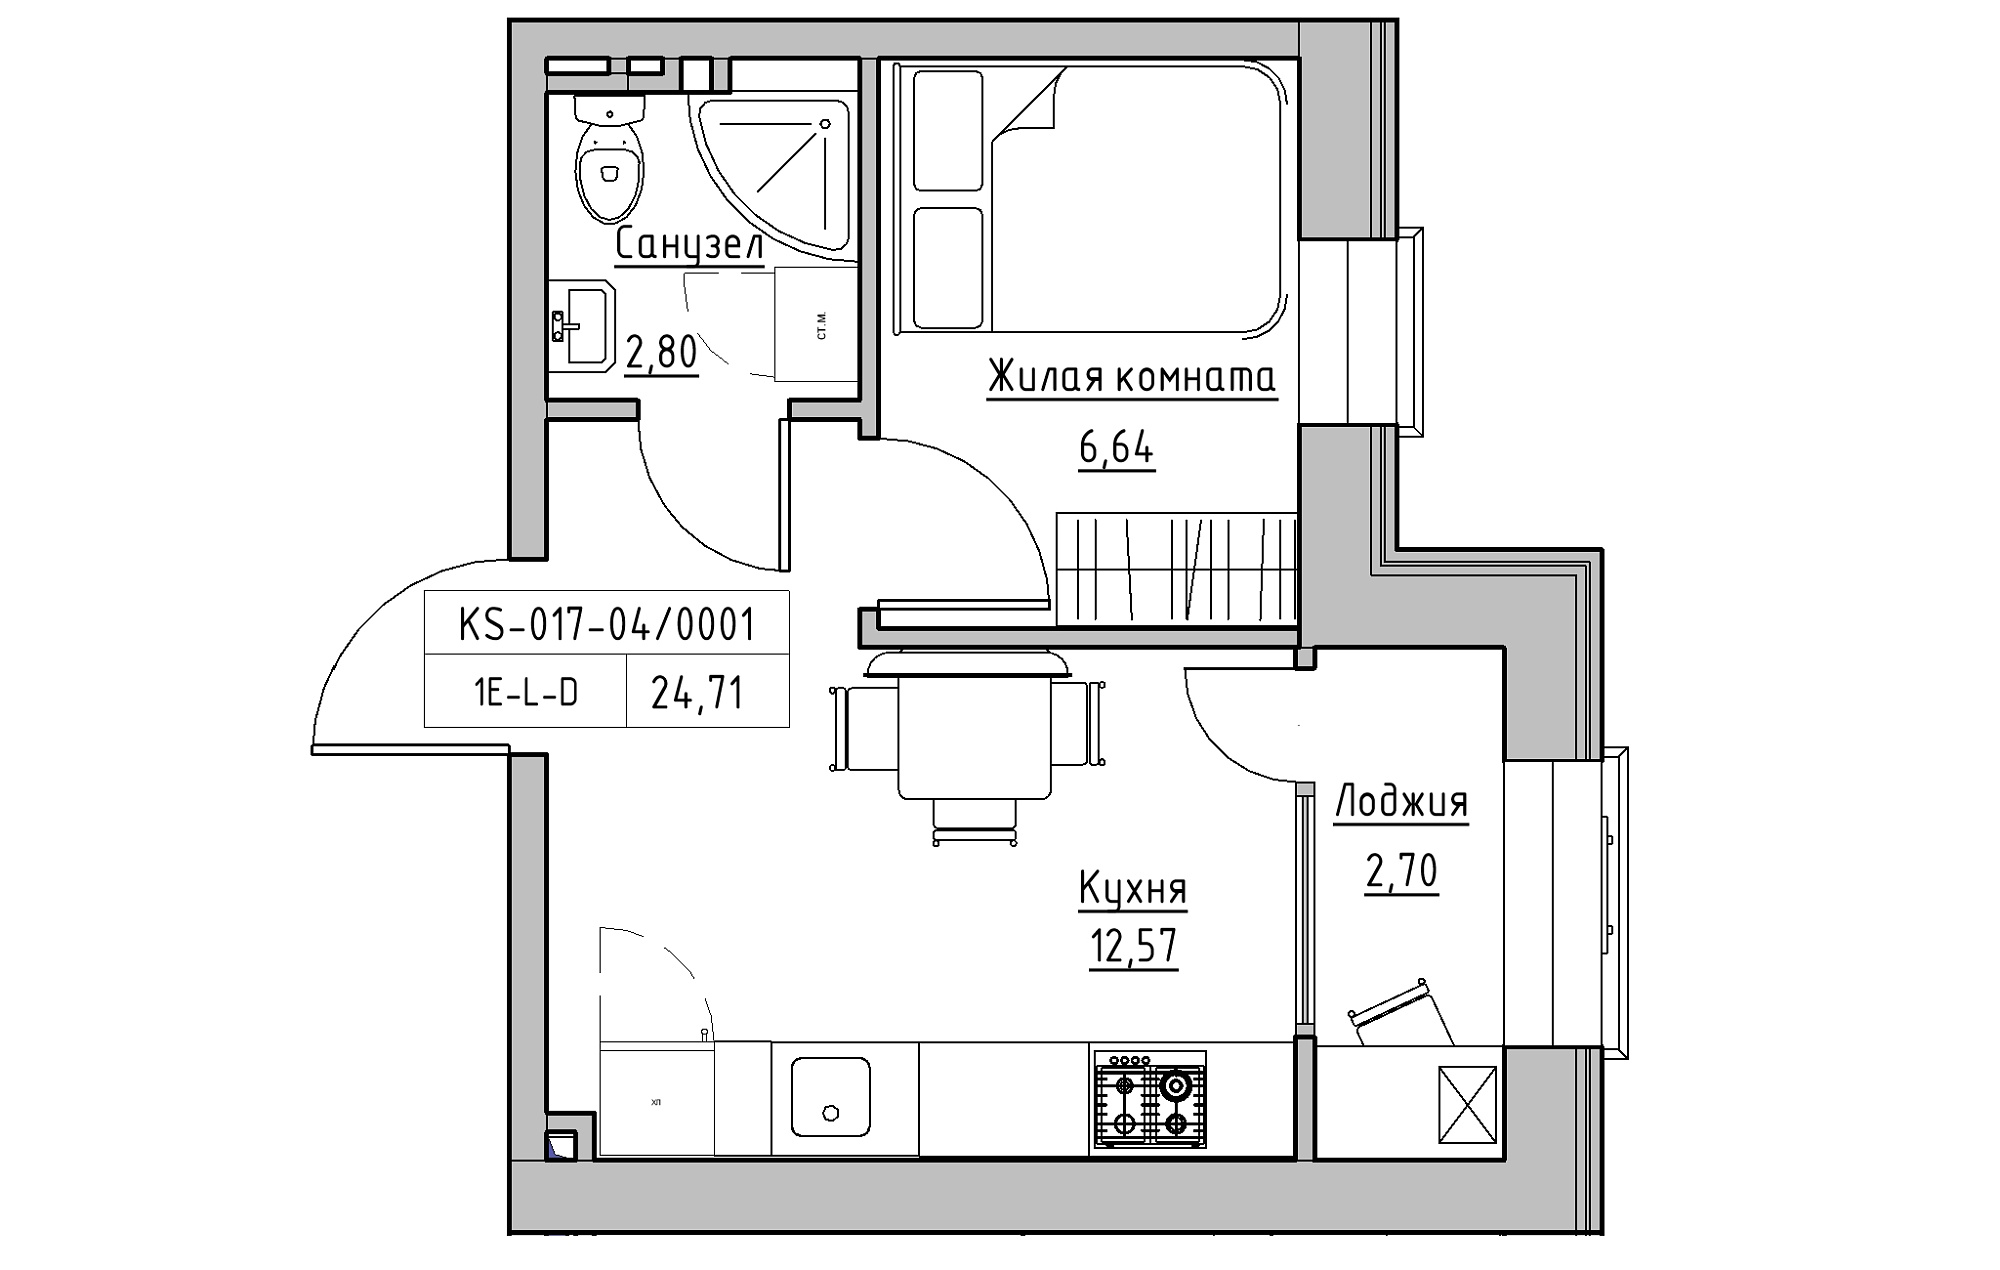 Планування 1-к квартира площею 24.71м2, KS-017-04/0001.